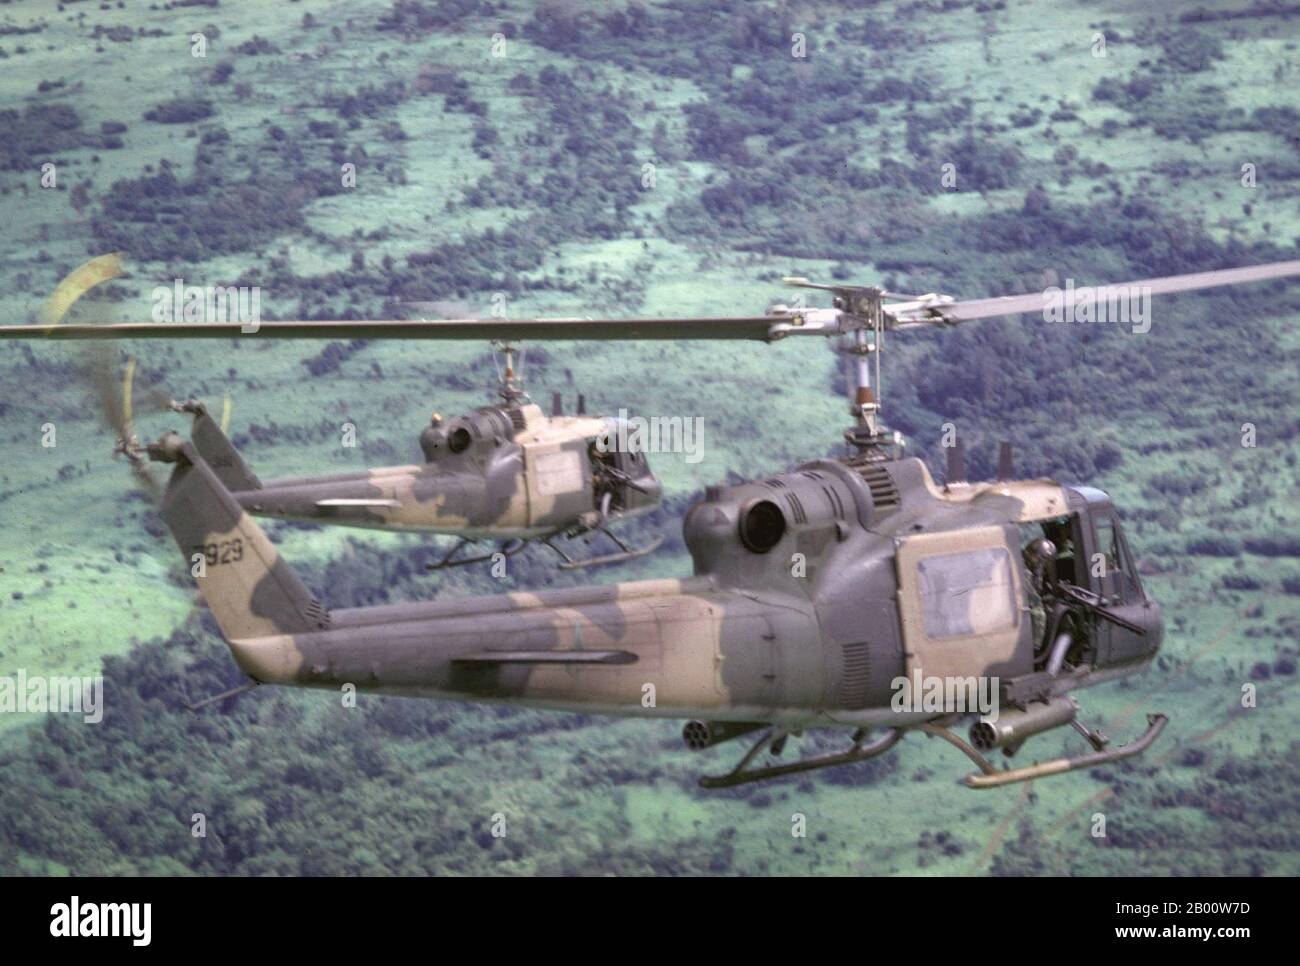 Cambogia: US elicotteri da sparare (USAF UH-1PS) che volano clandestinamente sulla Cambogia nel 1970. La Campagna cambogiana (nota anche come incursione cambogiana) è stata una serie di operazioni militari condotte nella Cambogia orientale durante la metà del 1970 dagli Stati Uniti (Stati Uniti) e dalla Repubblica del Vietnam (Vietnam del Sud) durante la guerra del Vietnam. Un totale di 13 operazioni importanti sono state condotte dall'Esercito della Repubblica del Vietnam (ARVN) tra il 29 aprile e il 22 luglio e dalle forze statunitensi tra il 1° maggio e il 30 giugno. Foto Stock